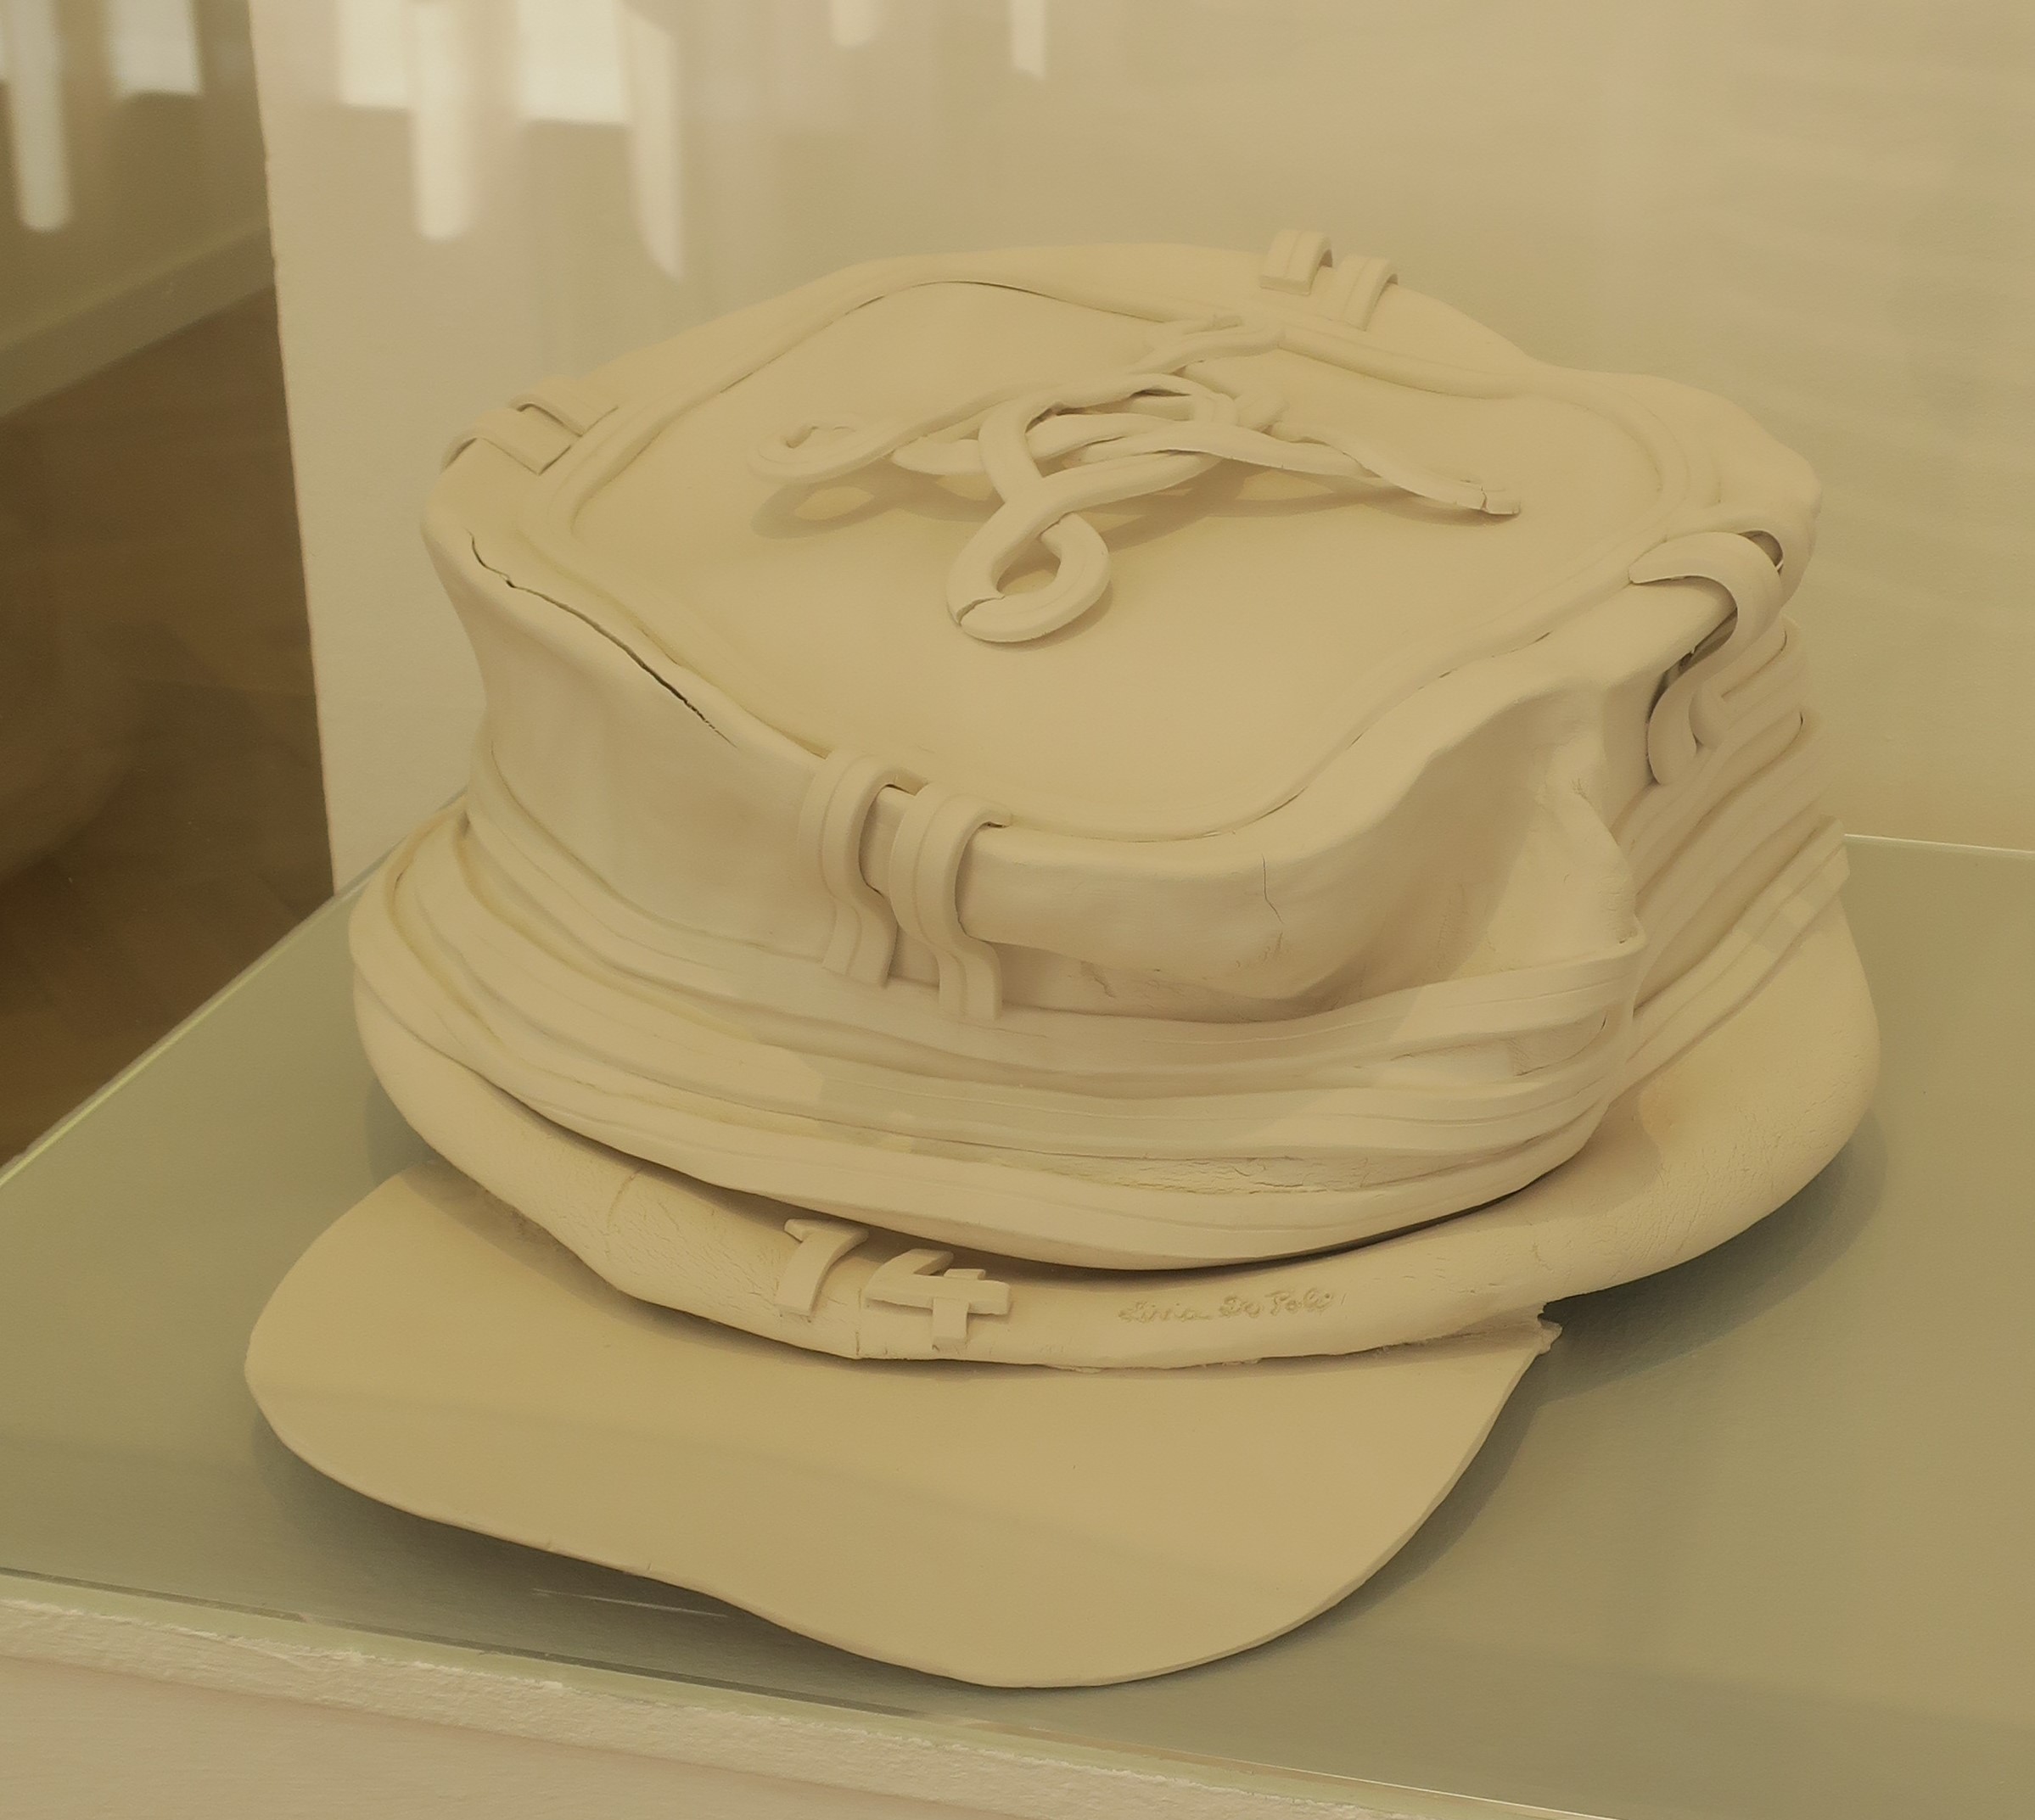 "Le képi déstructuré", céramique de Livia de Poli, exposée dans la Salle Dreyfus.